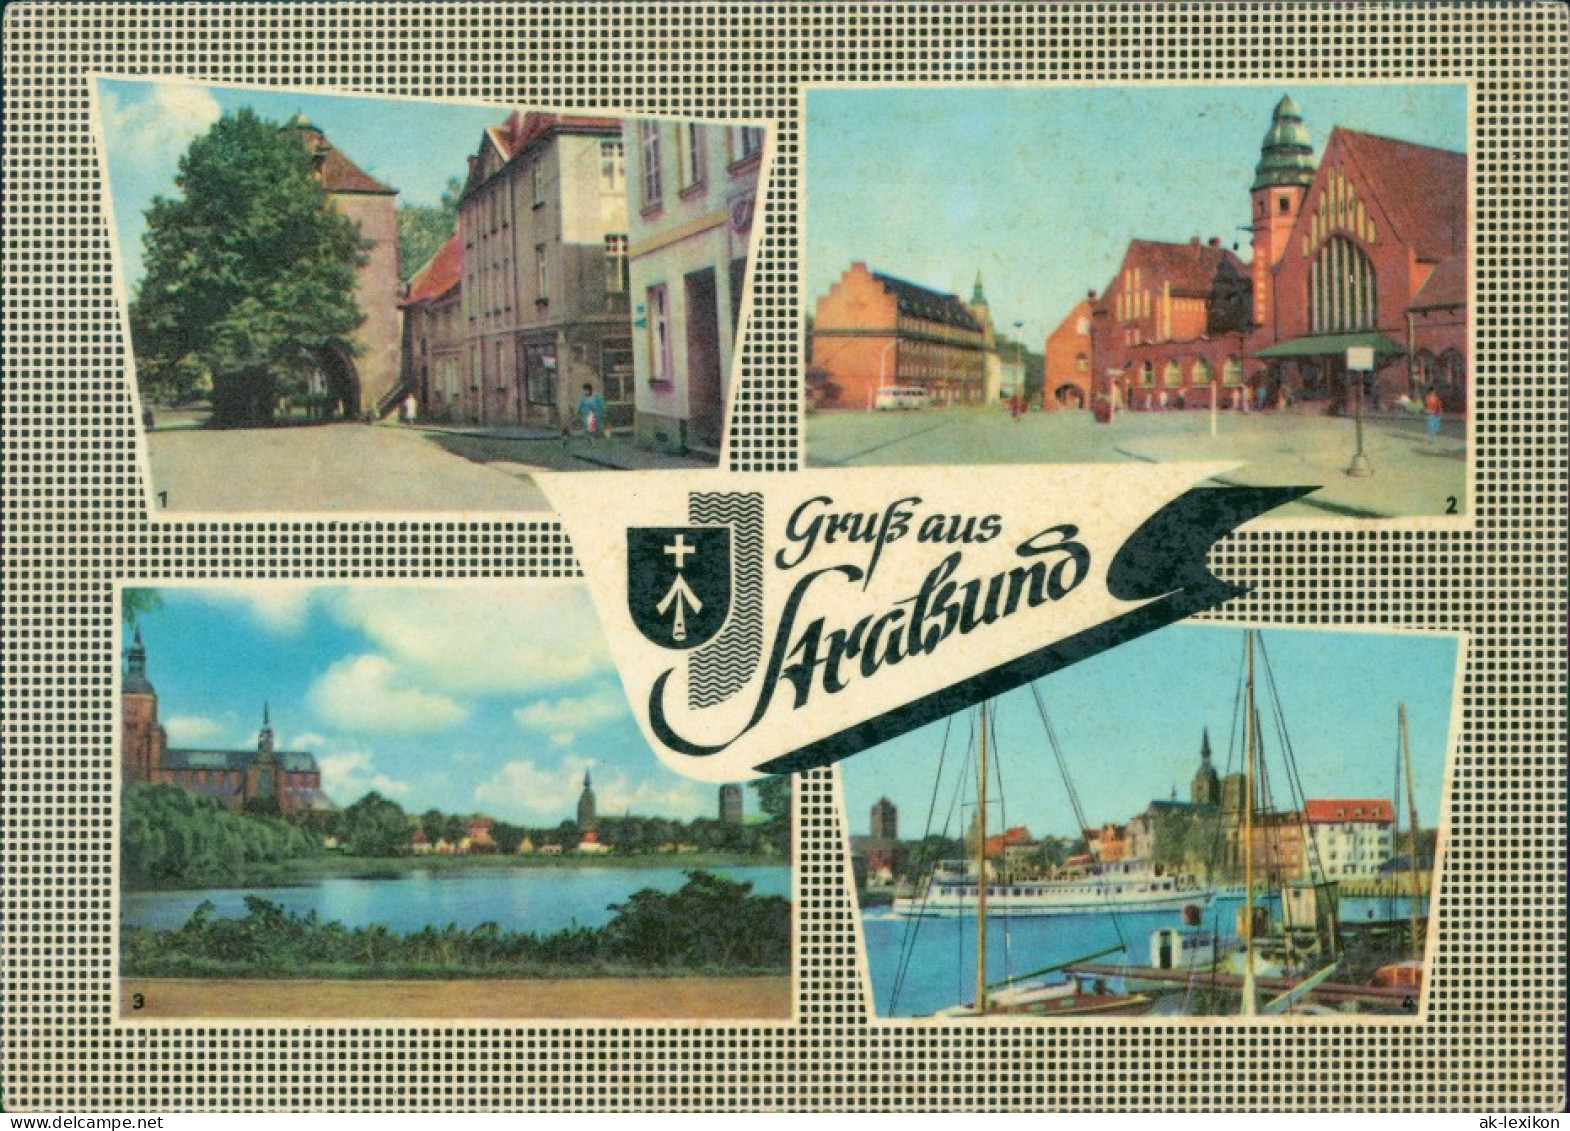 Stralsund, Teichpromenade, Kniepertor Hafen, Schiff "Seebad Heringsdorf" 1963 - Stralsund